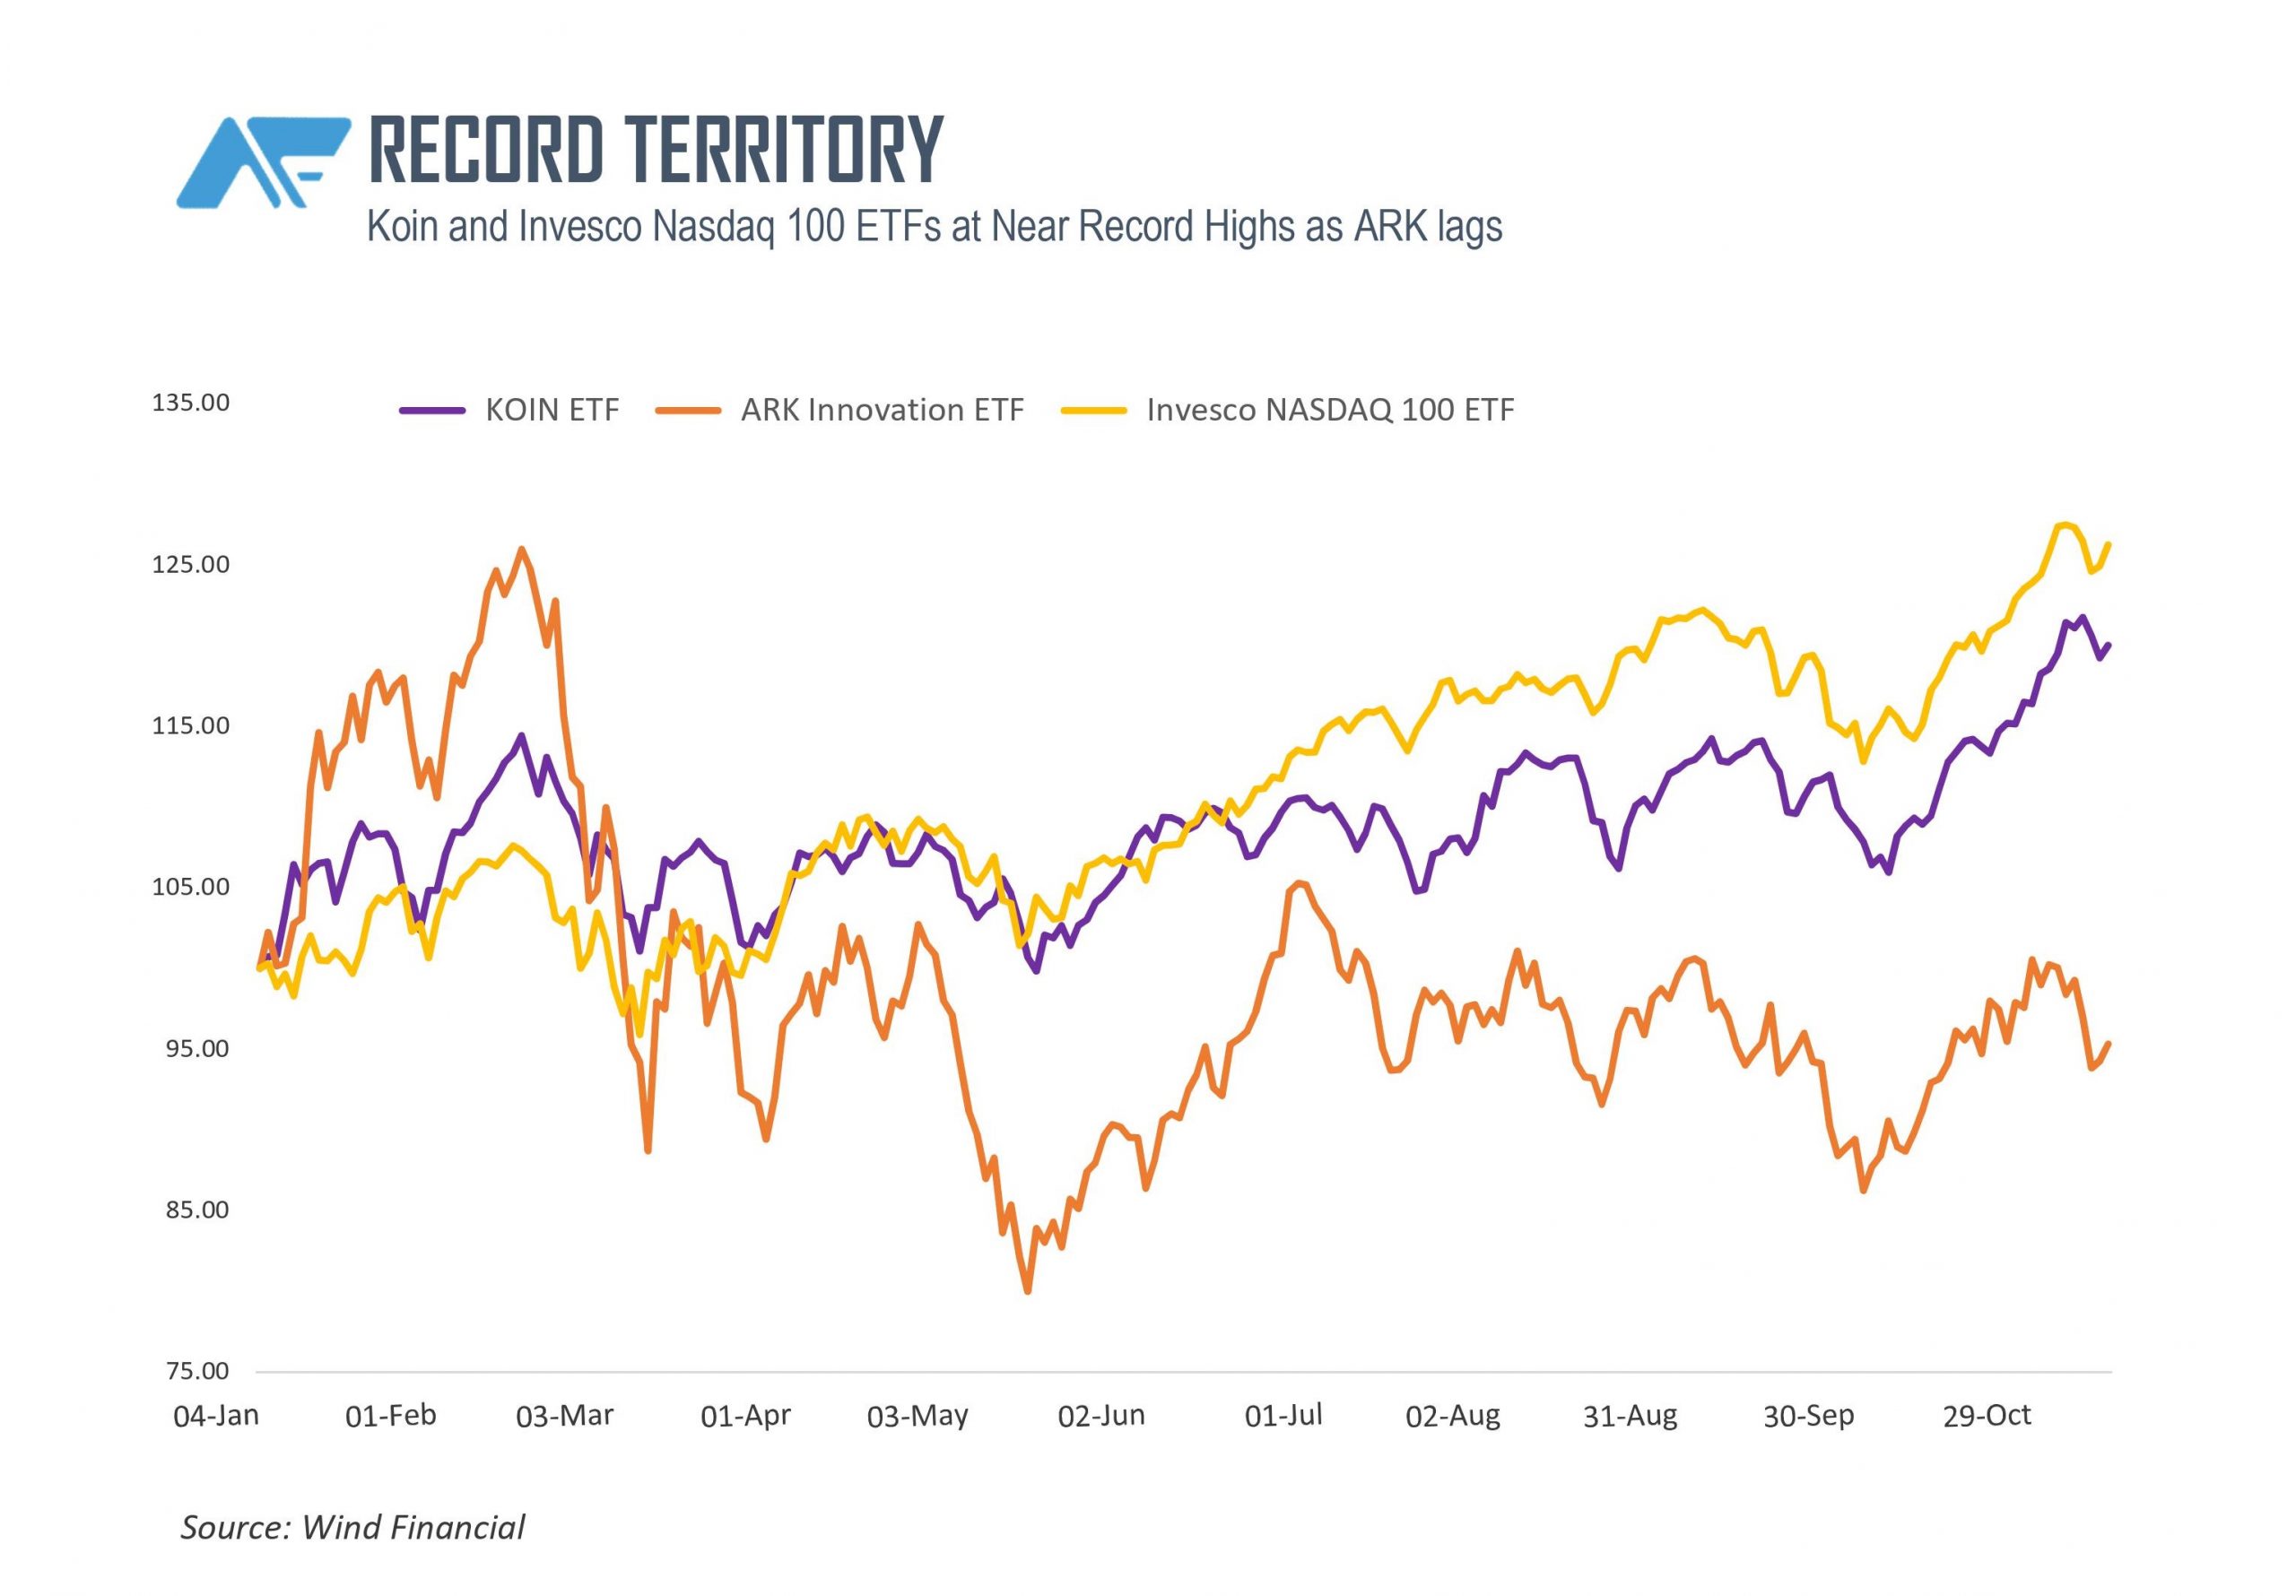 Koin ETF rivals broader market gauges at near record highs.